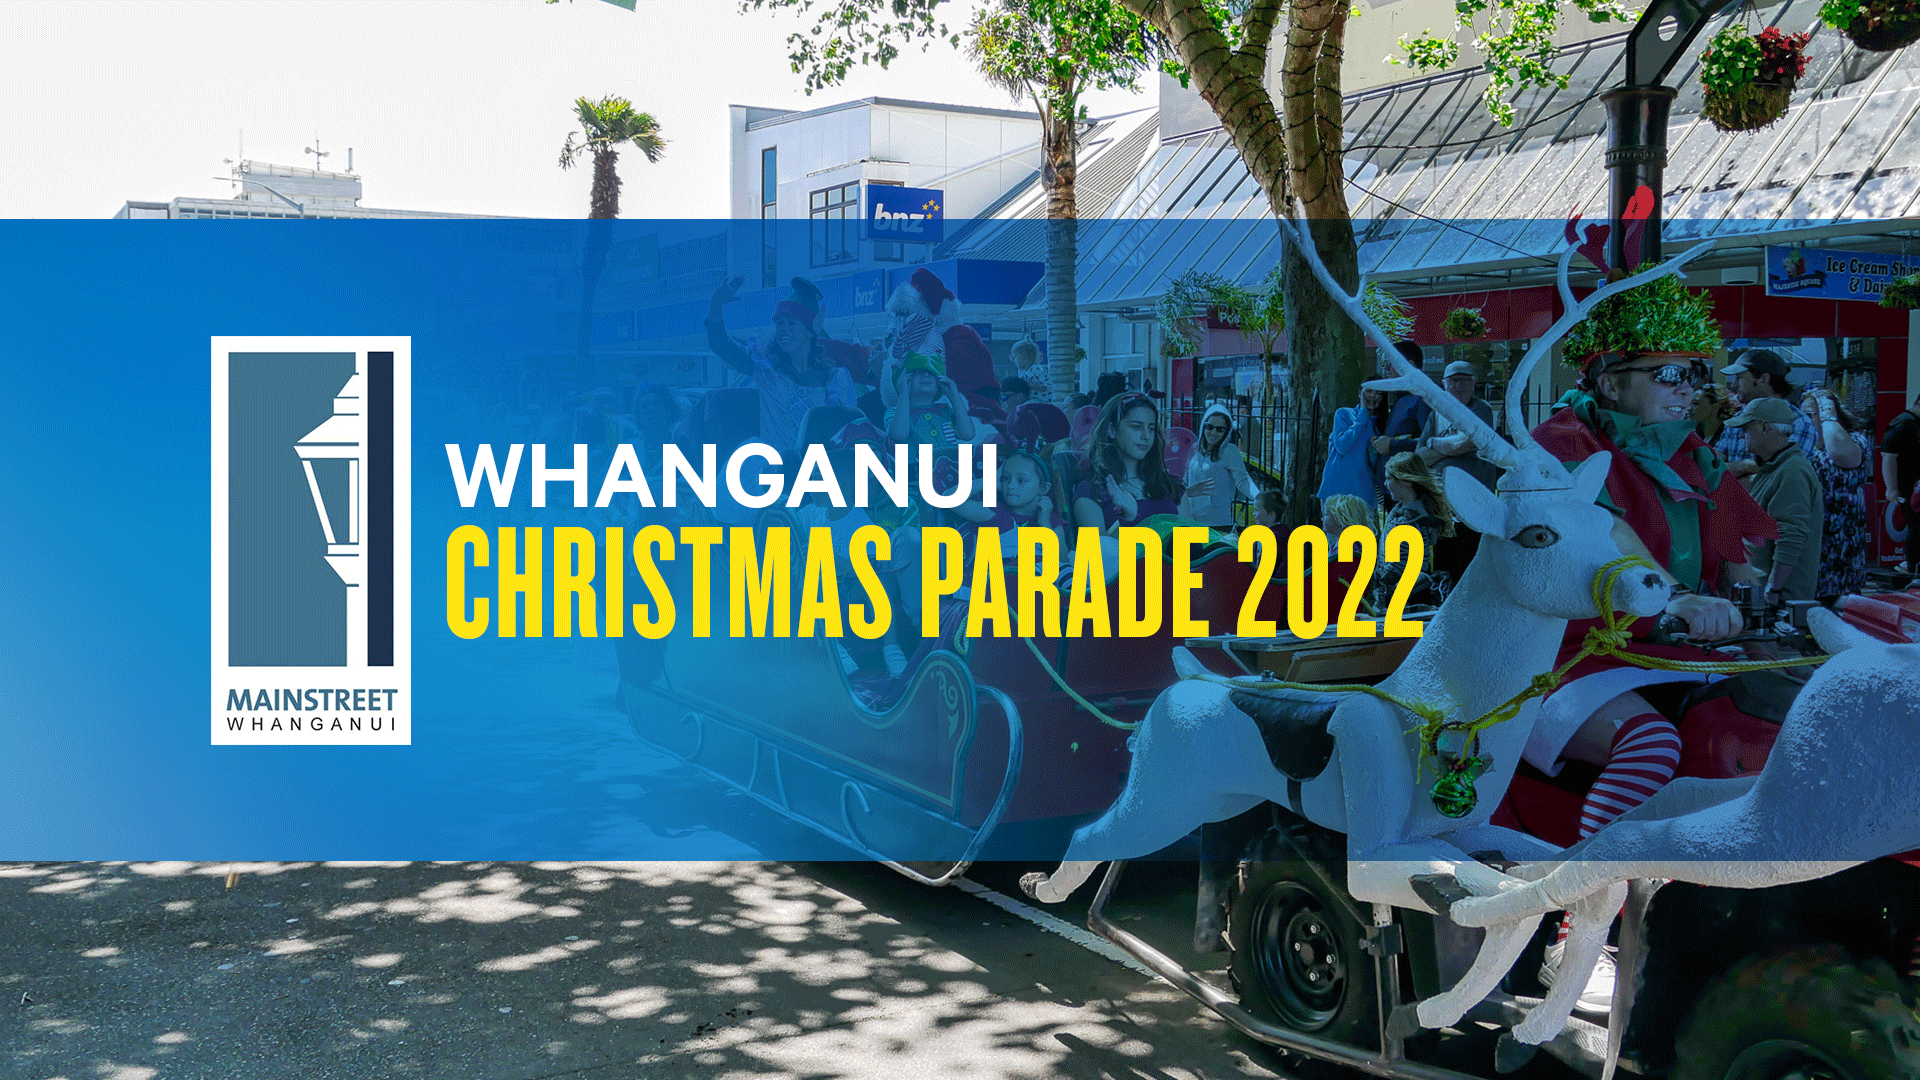 Whanganui Christmas Parade 2022